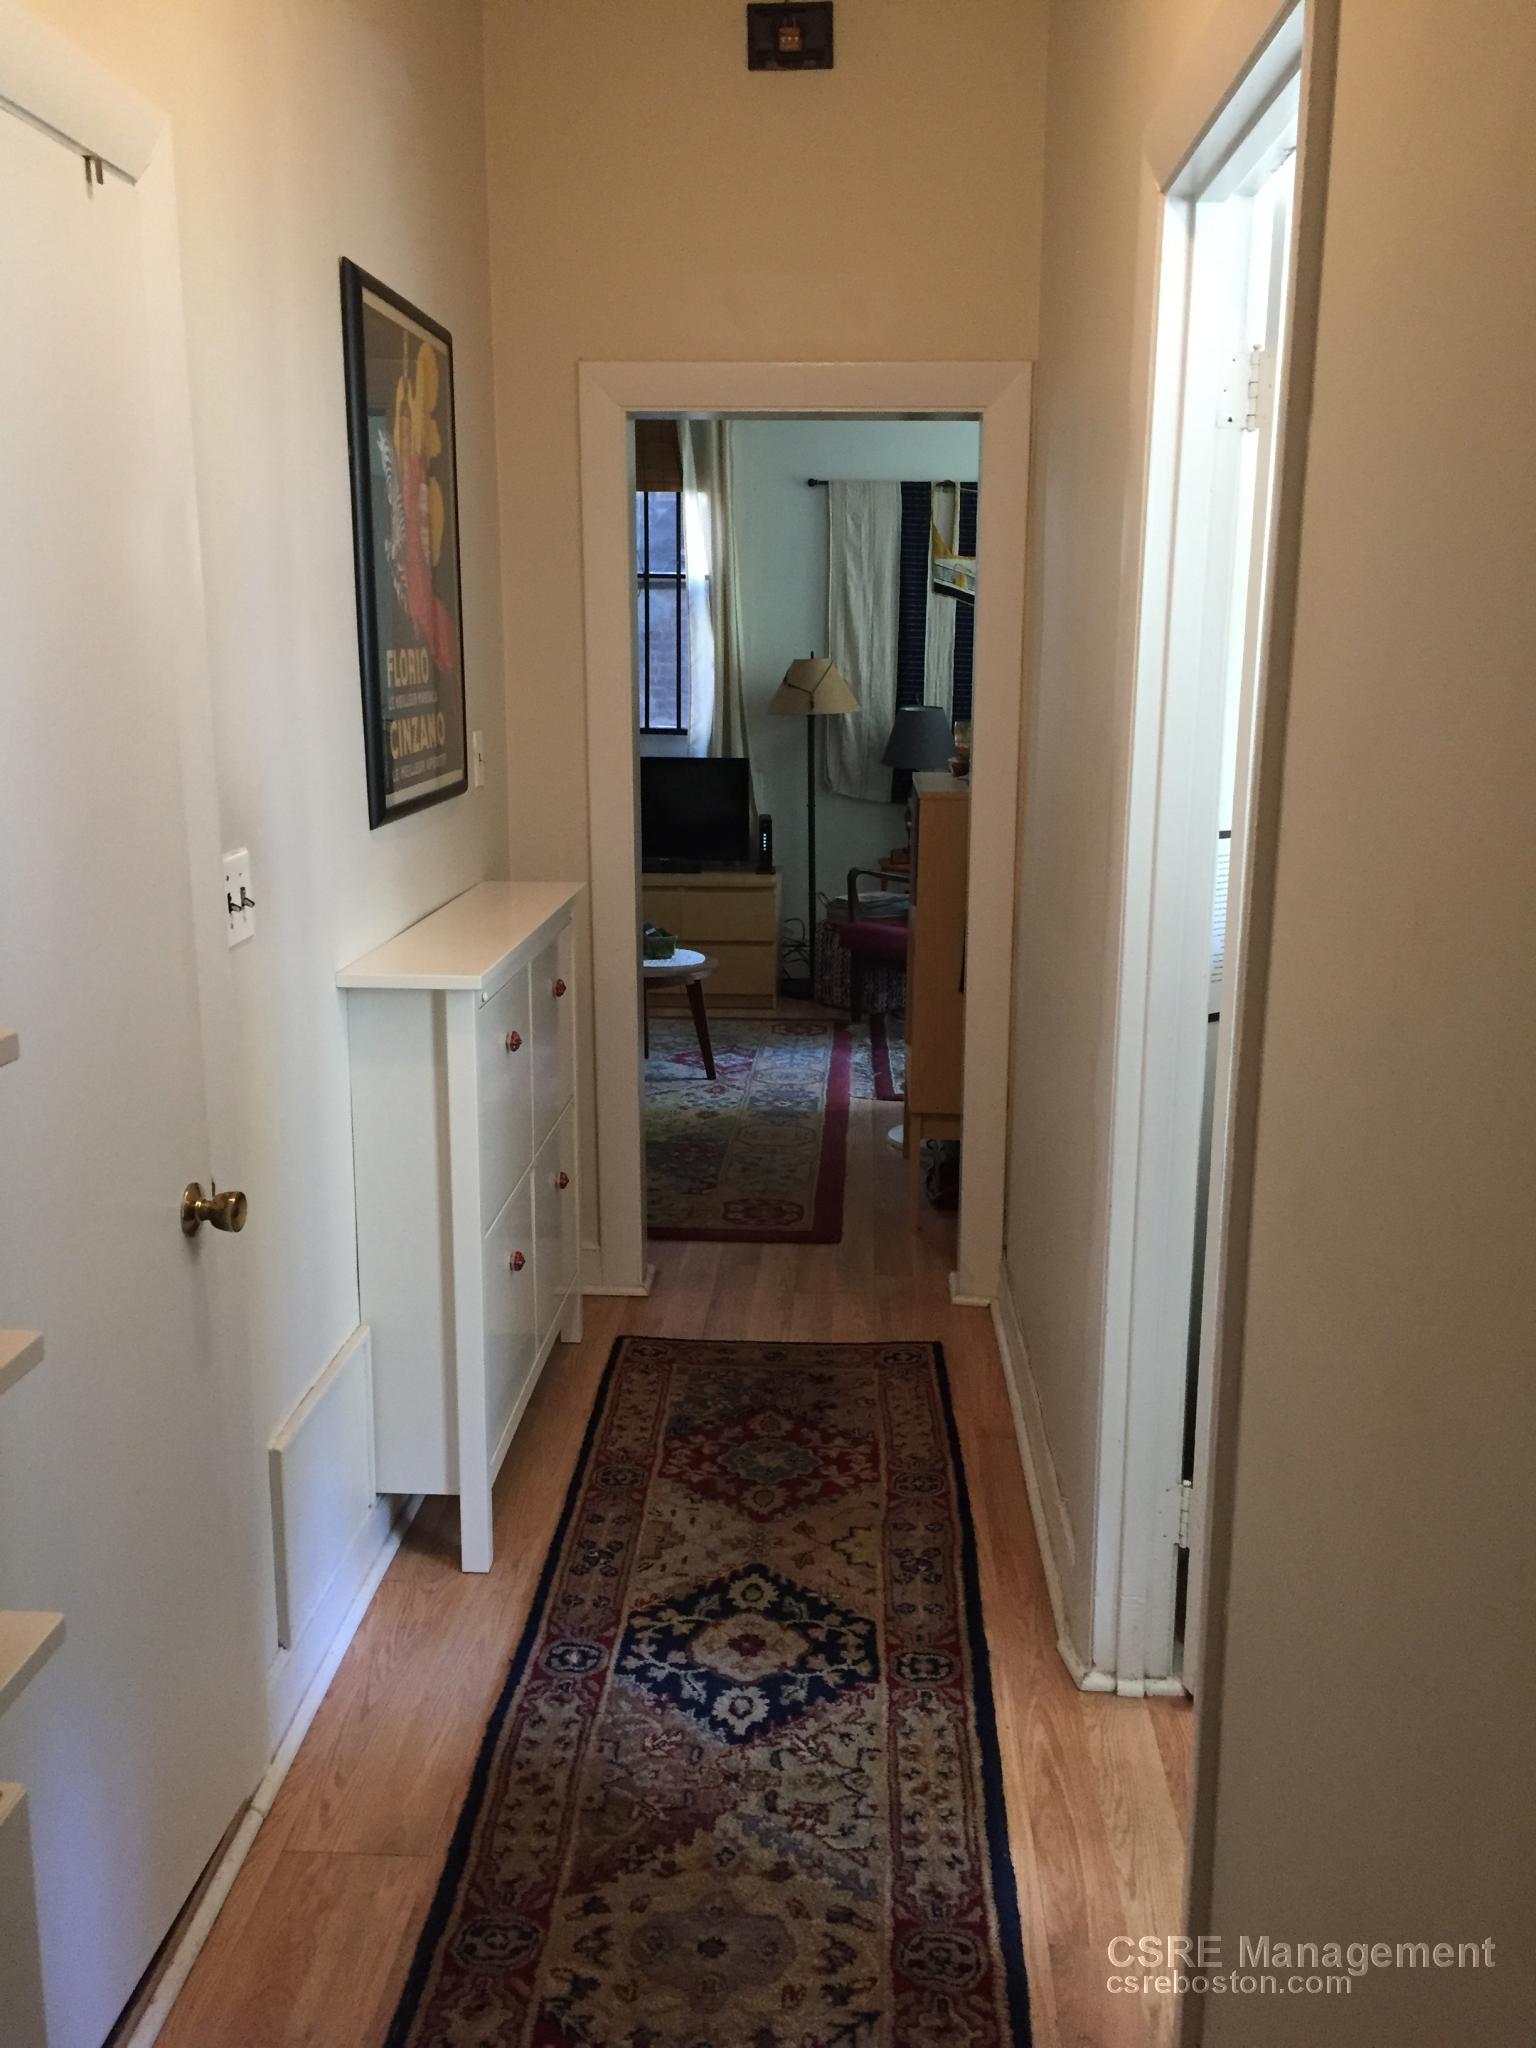 Photos of apartment on Union Park,Boston MA 02118